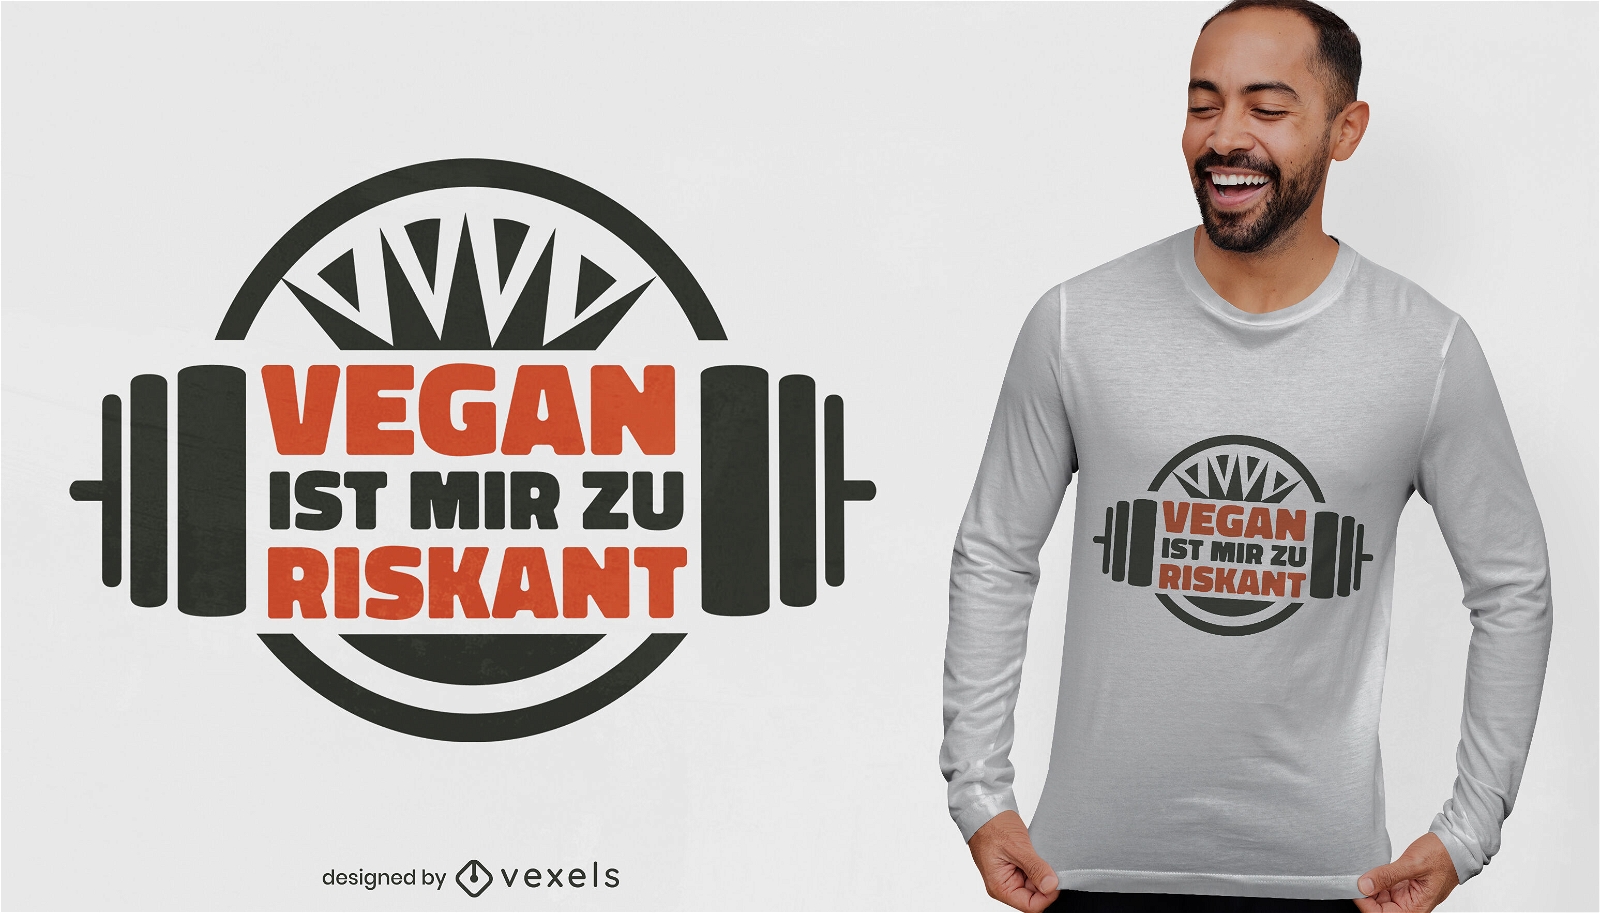 Vegano es demasiado arriesgado para m? dise?o de camiseta.